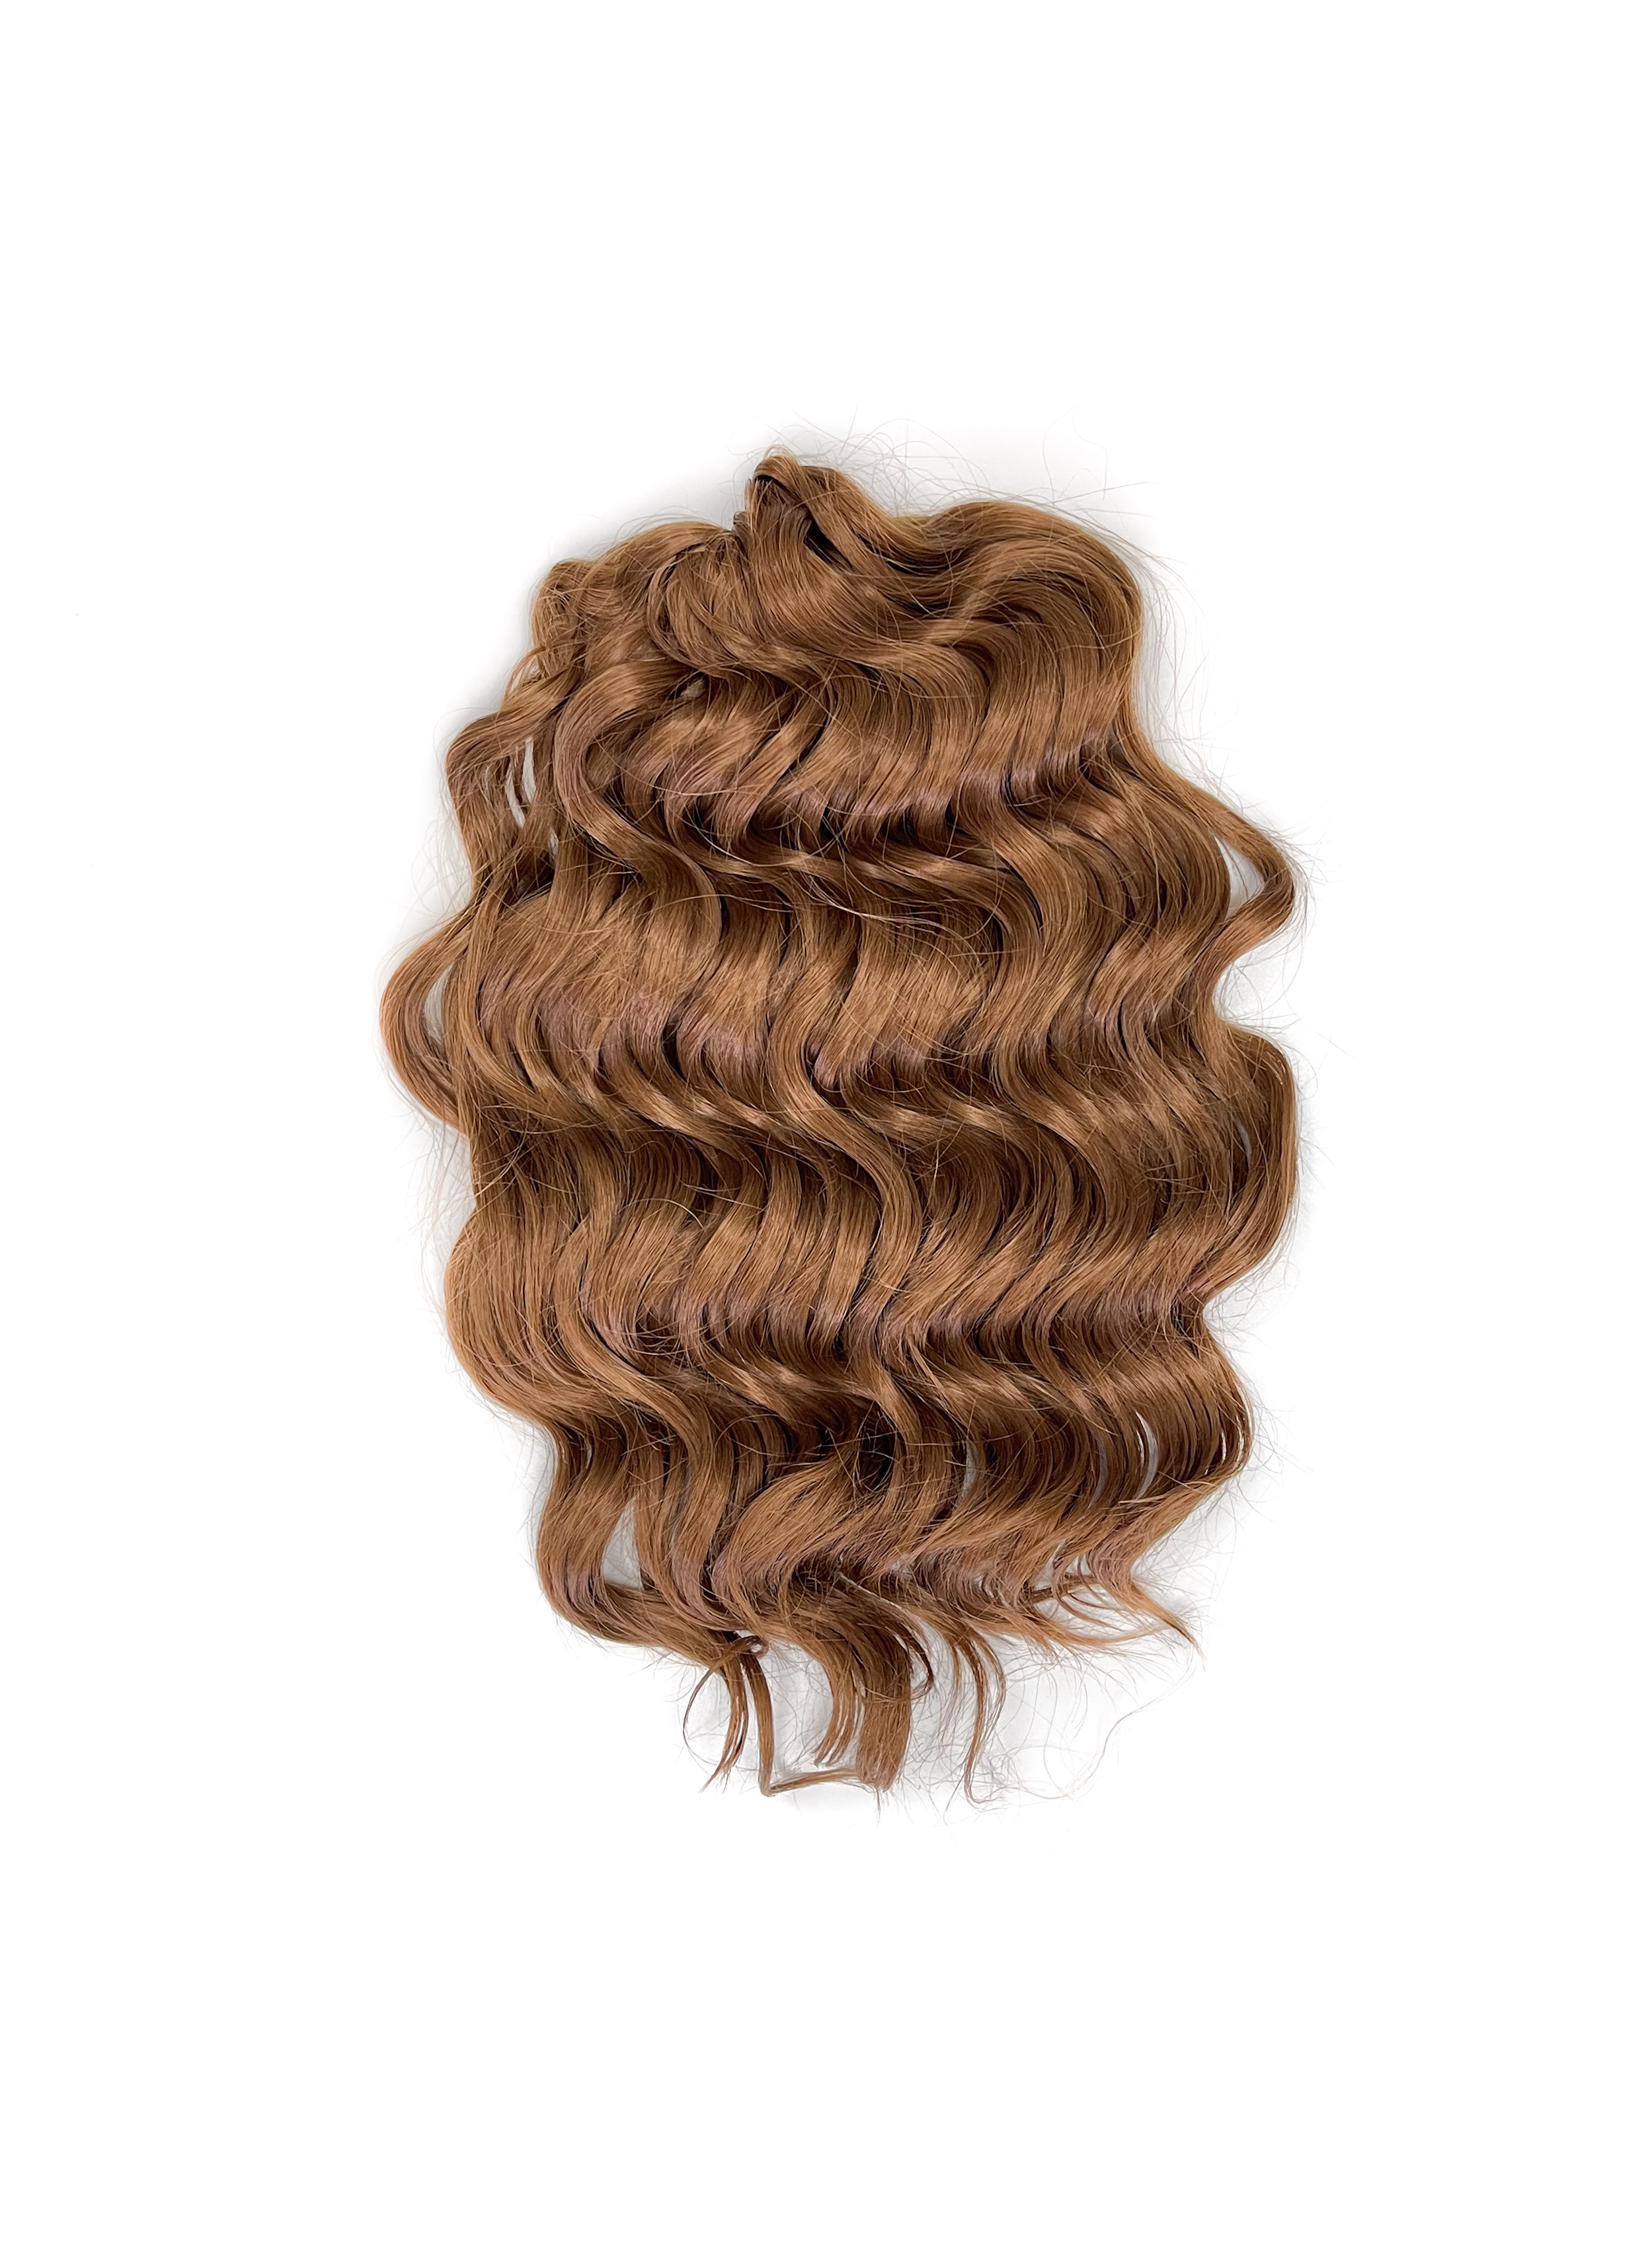 Афрокудри для плетения волос Anna Manasi Browen79 длина 40 вес 300г резиночки для плетения браслетов rainbow loom персидская коллекция искристый каштан